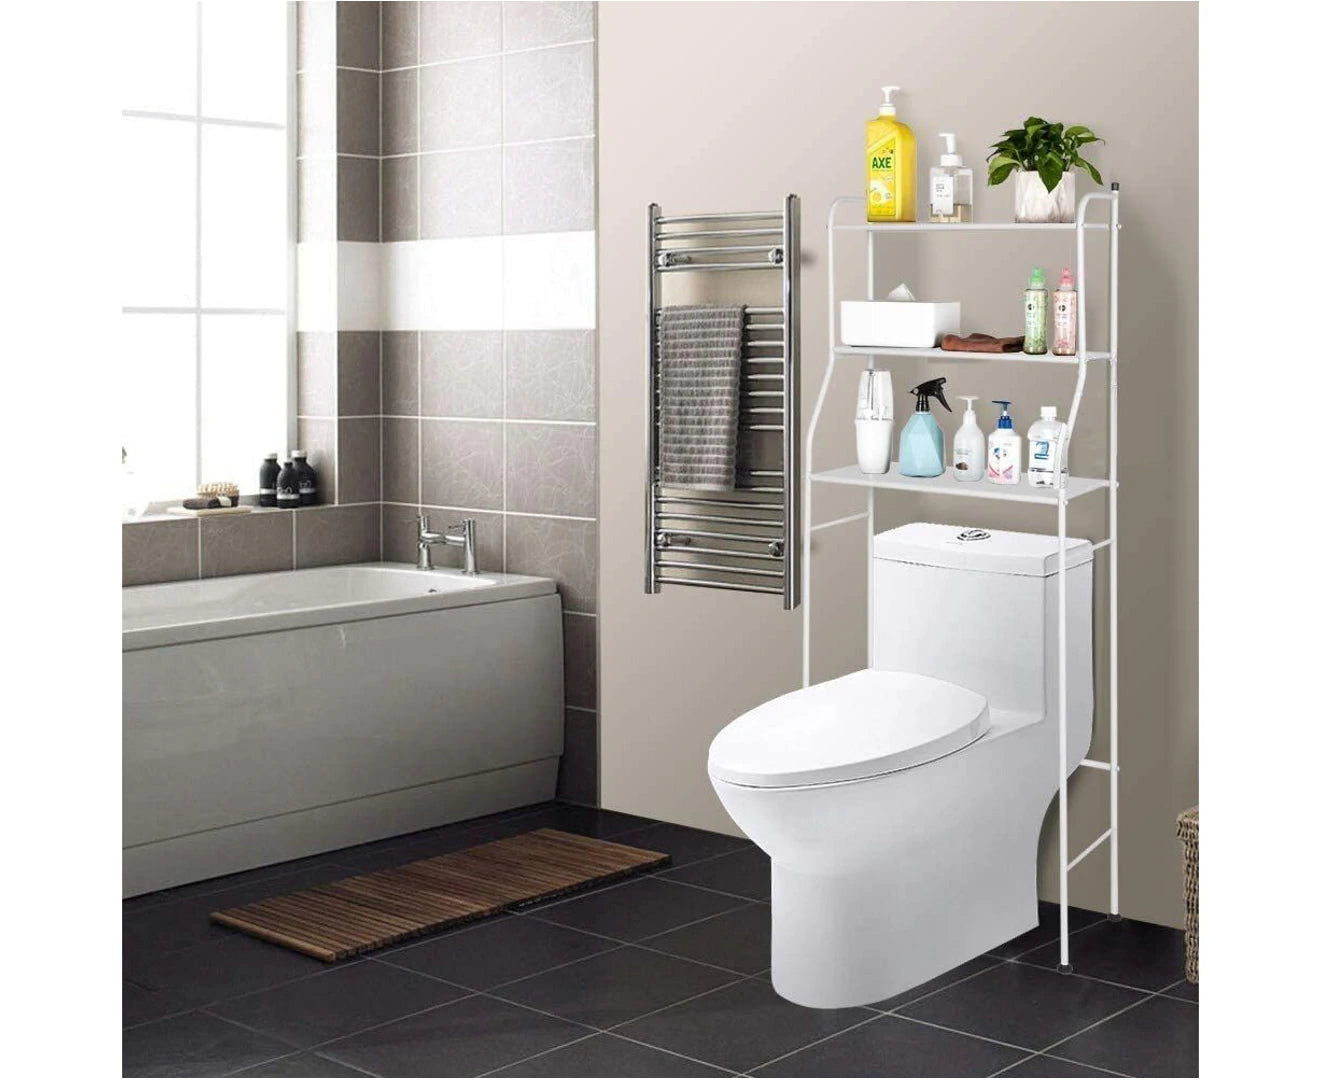 3 Tier Shower Caddy Aluminium Hanging Rack Bathroom Shampoo Storage Shelf Home